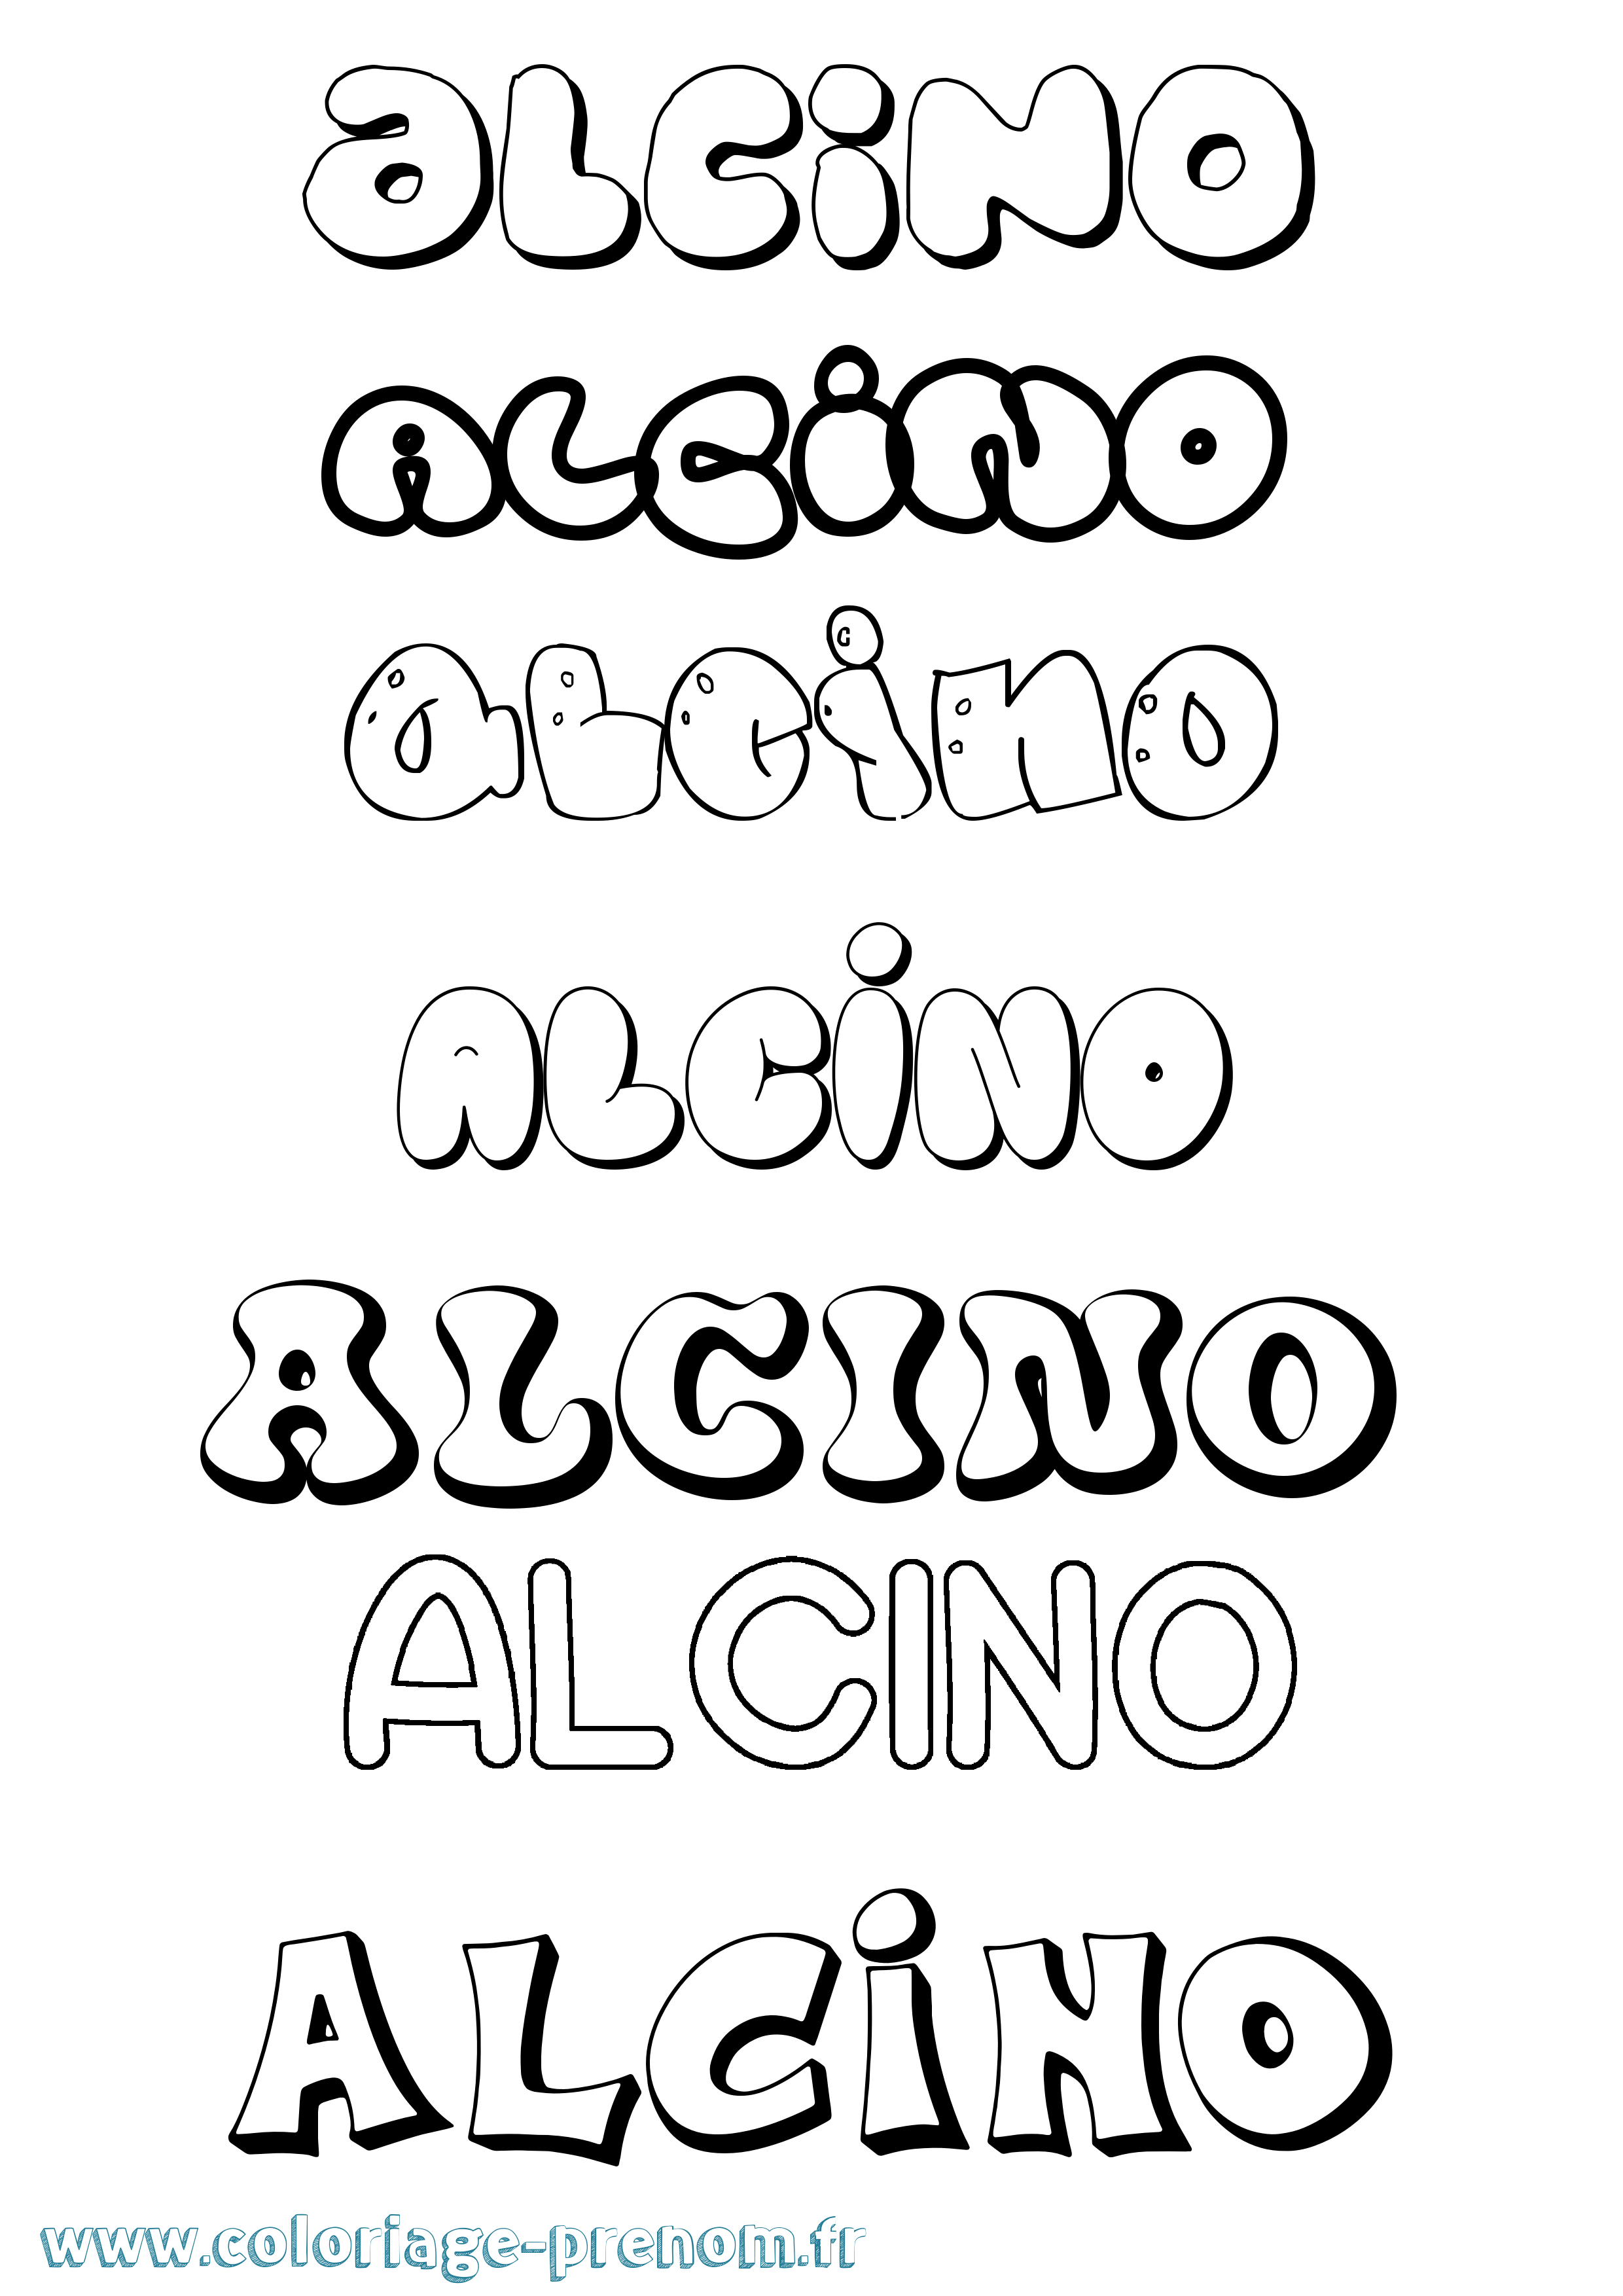 Coloriage prénom Alcino Bubble